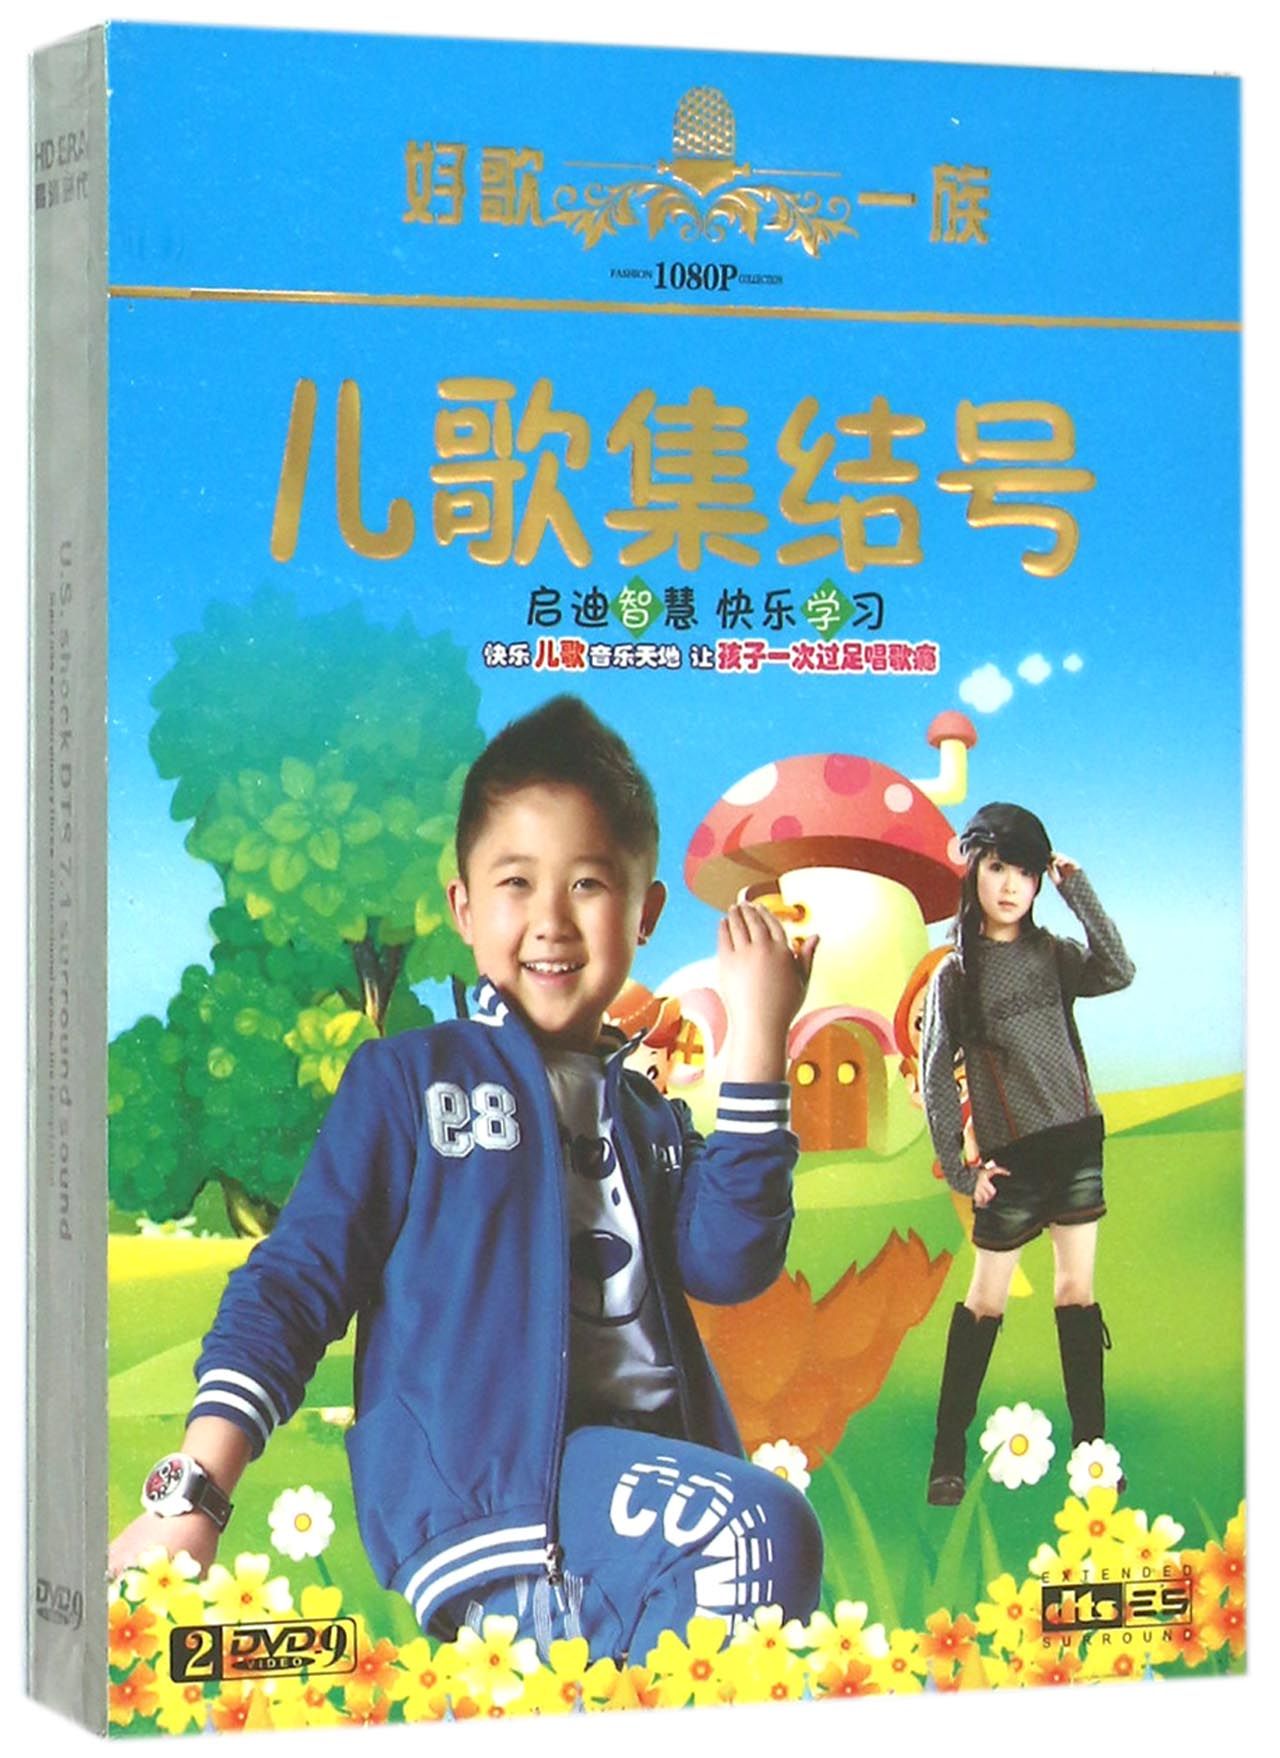 DVD-9儿歌集结号(2碟装)